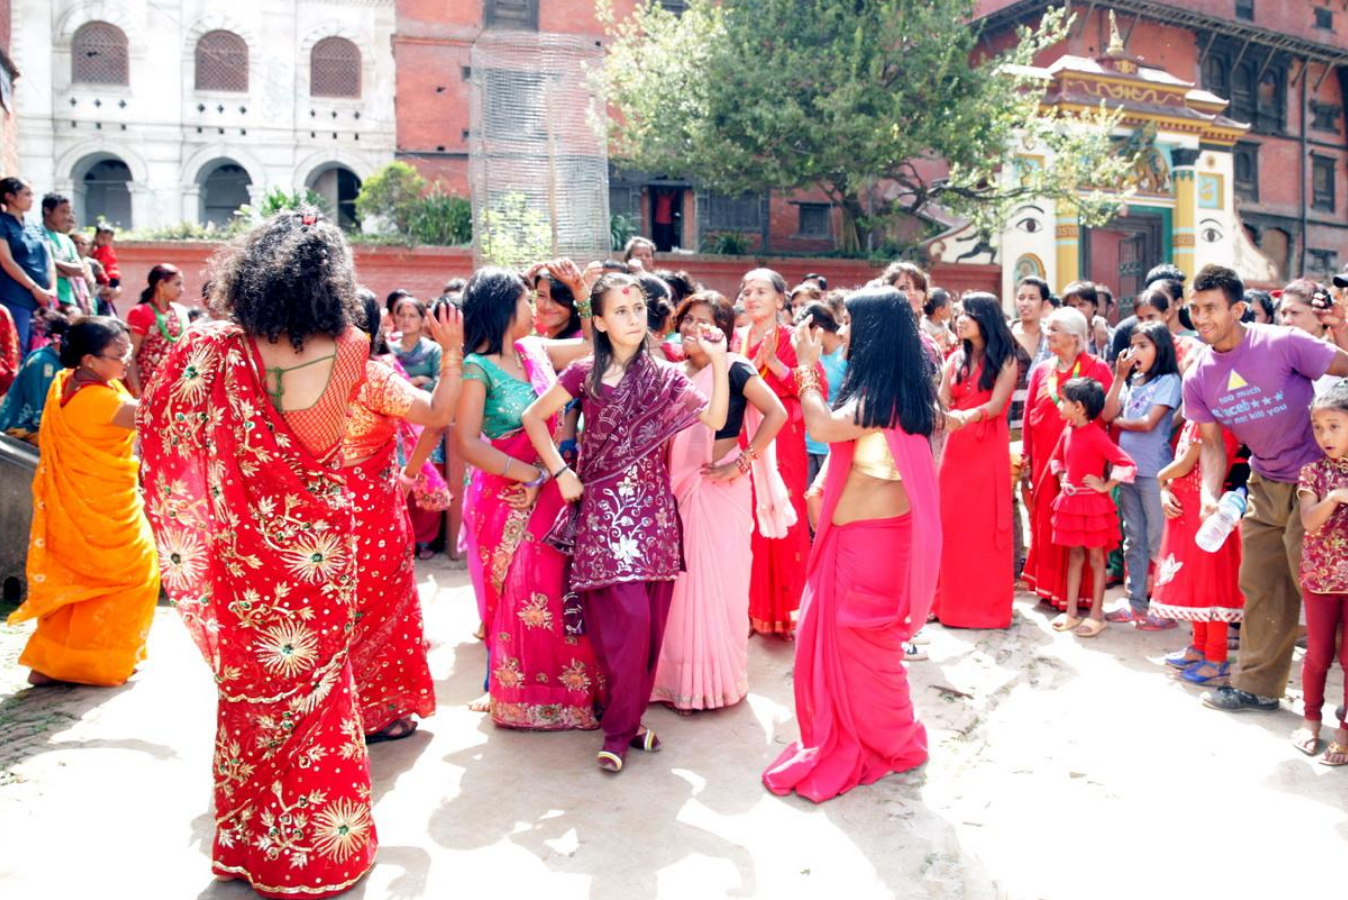 尼泊尔高哥的国际生活图片